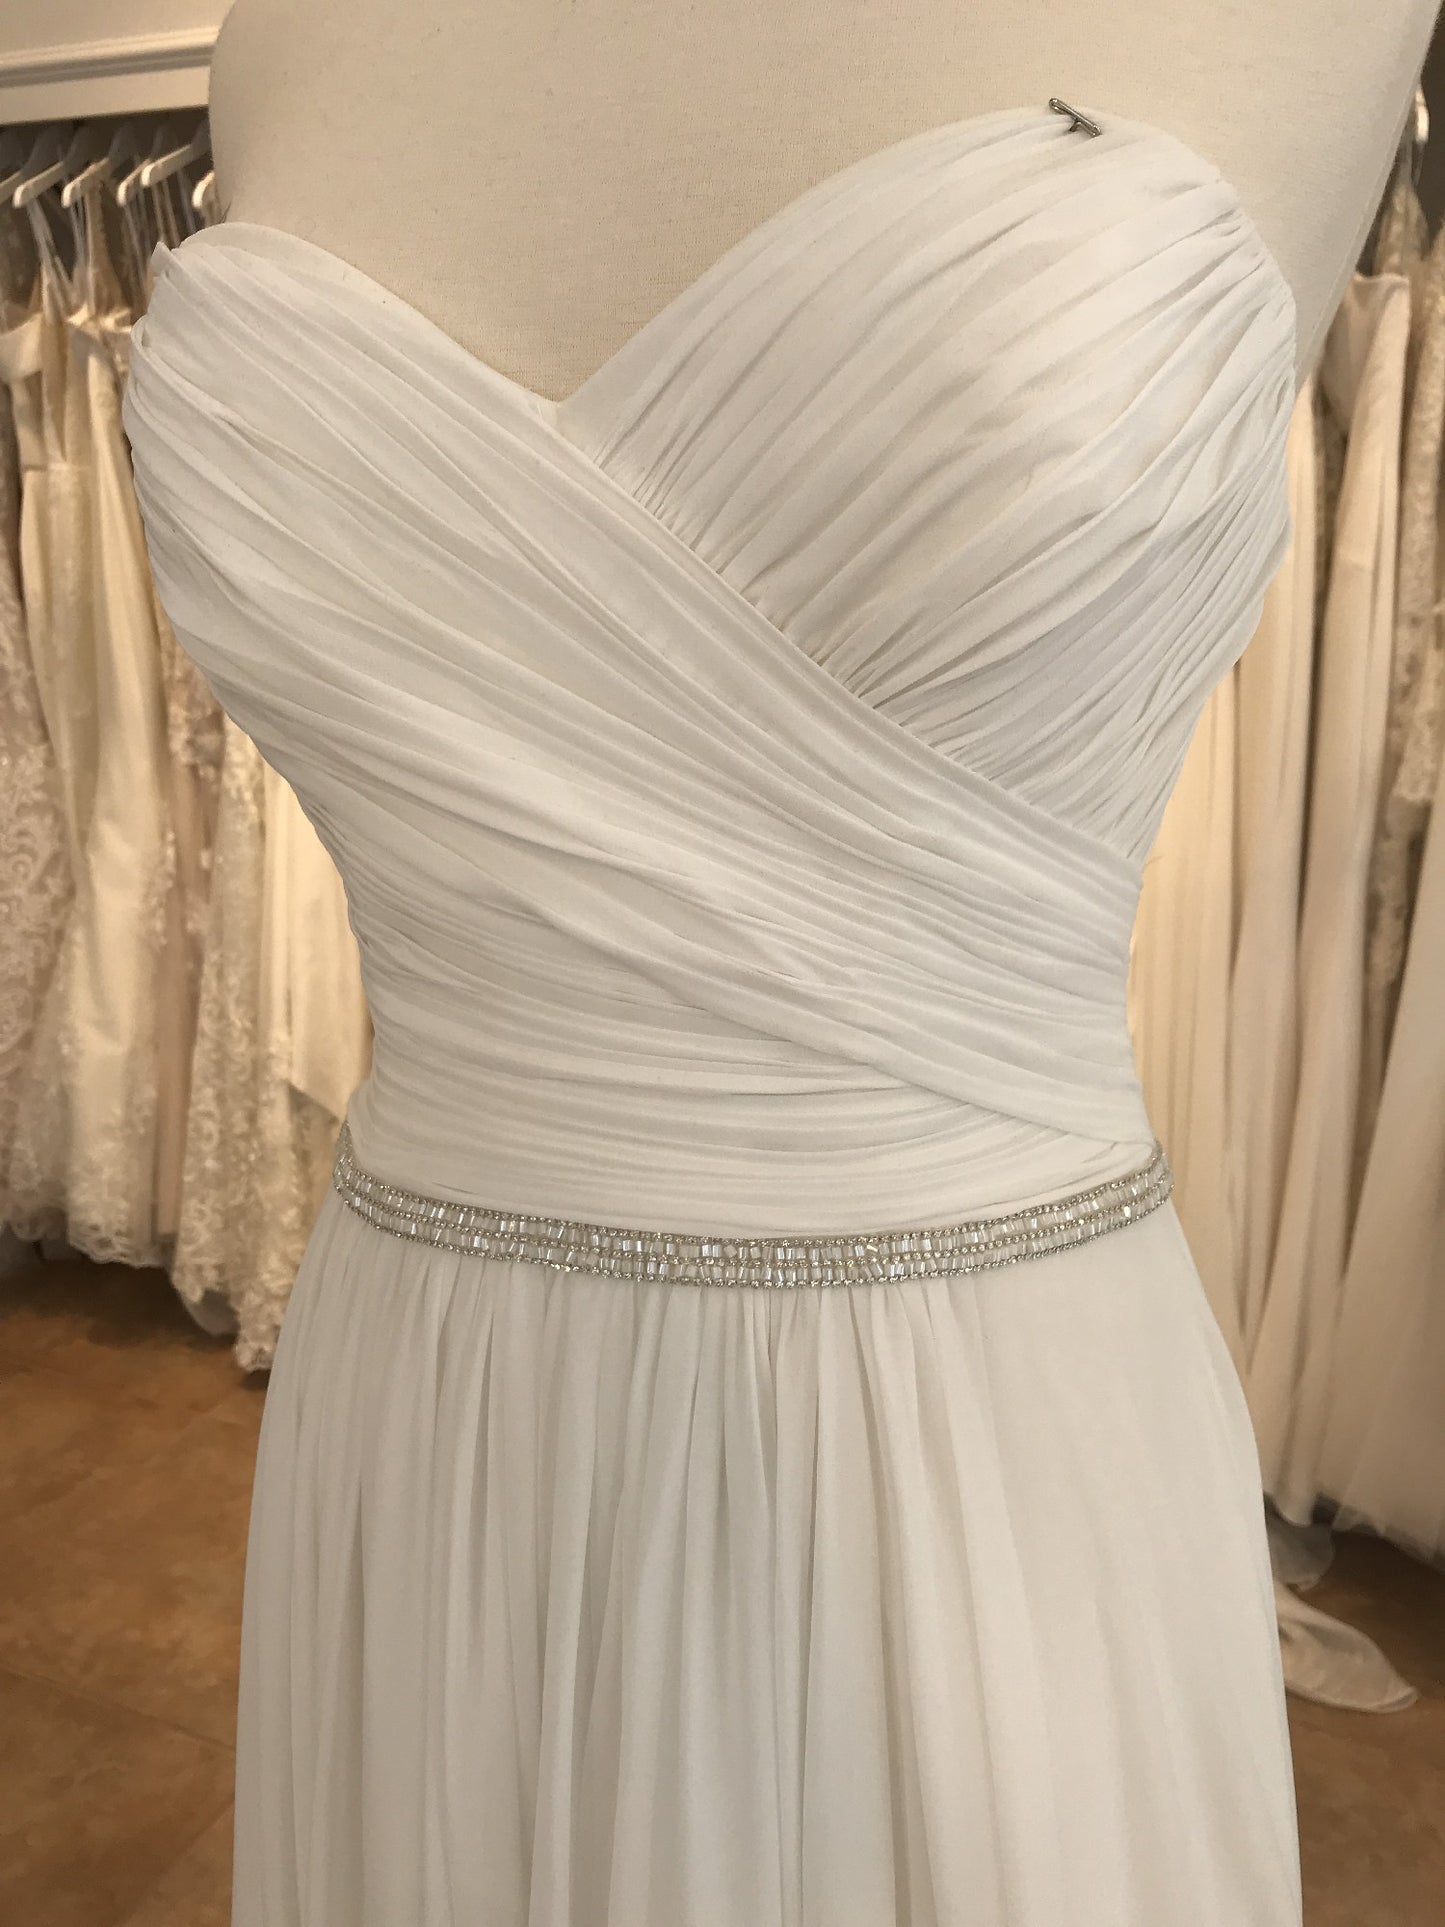 Dress 2529: Beautiful by Enzoani "BT18-19" waist 41